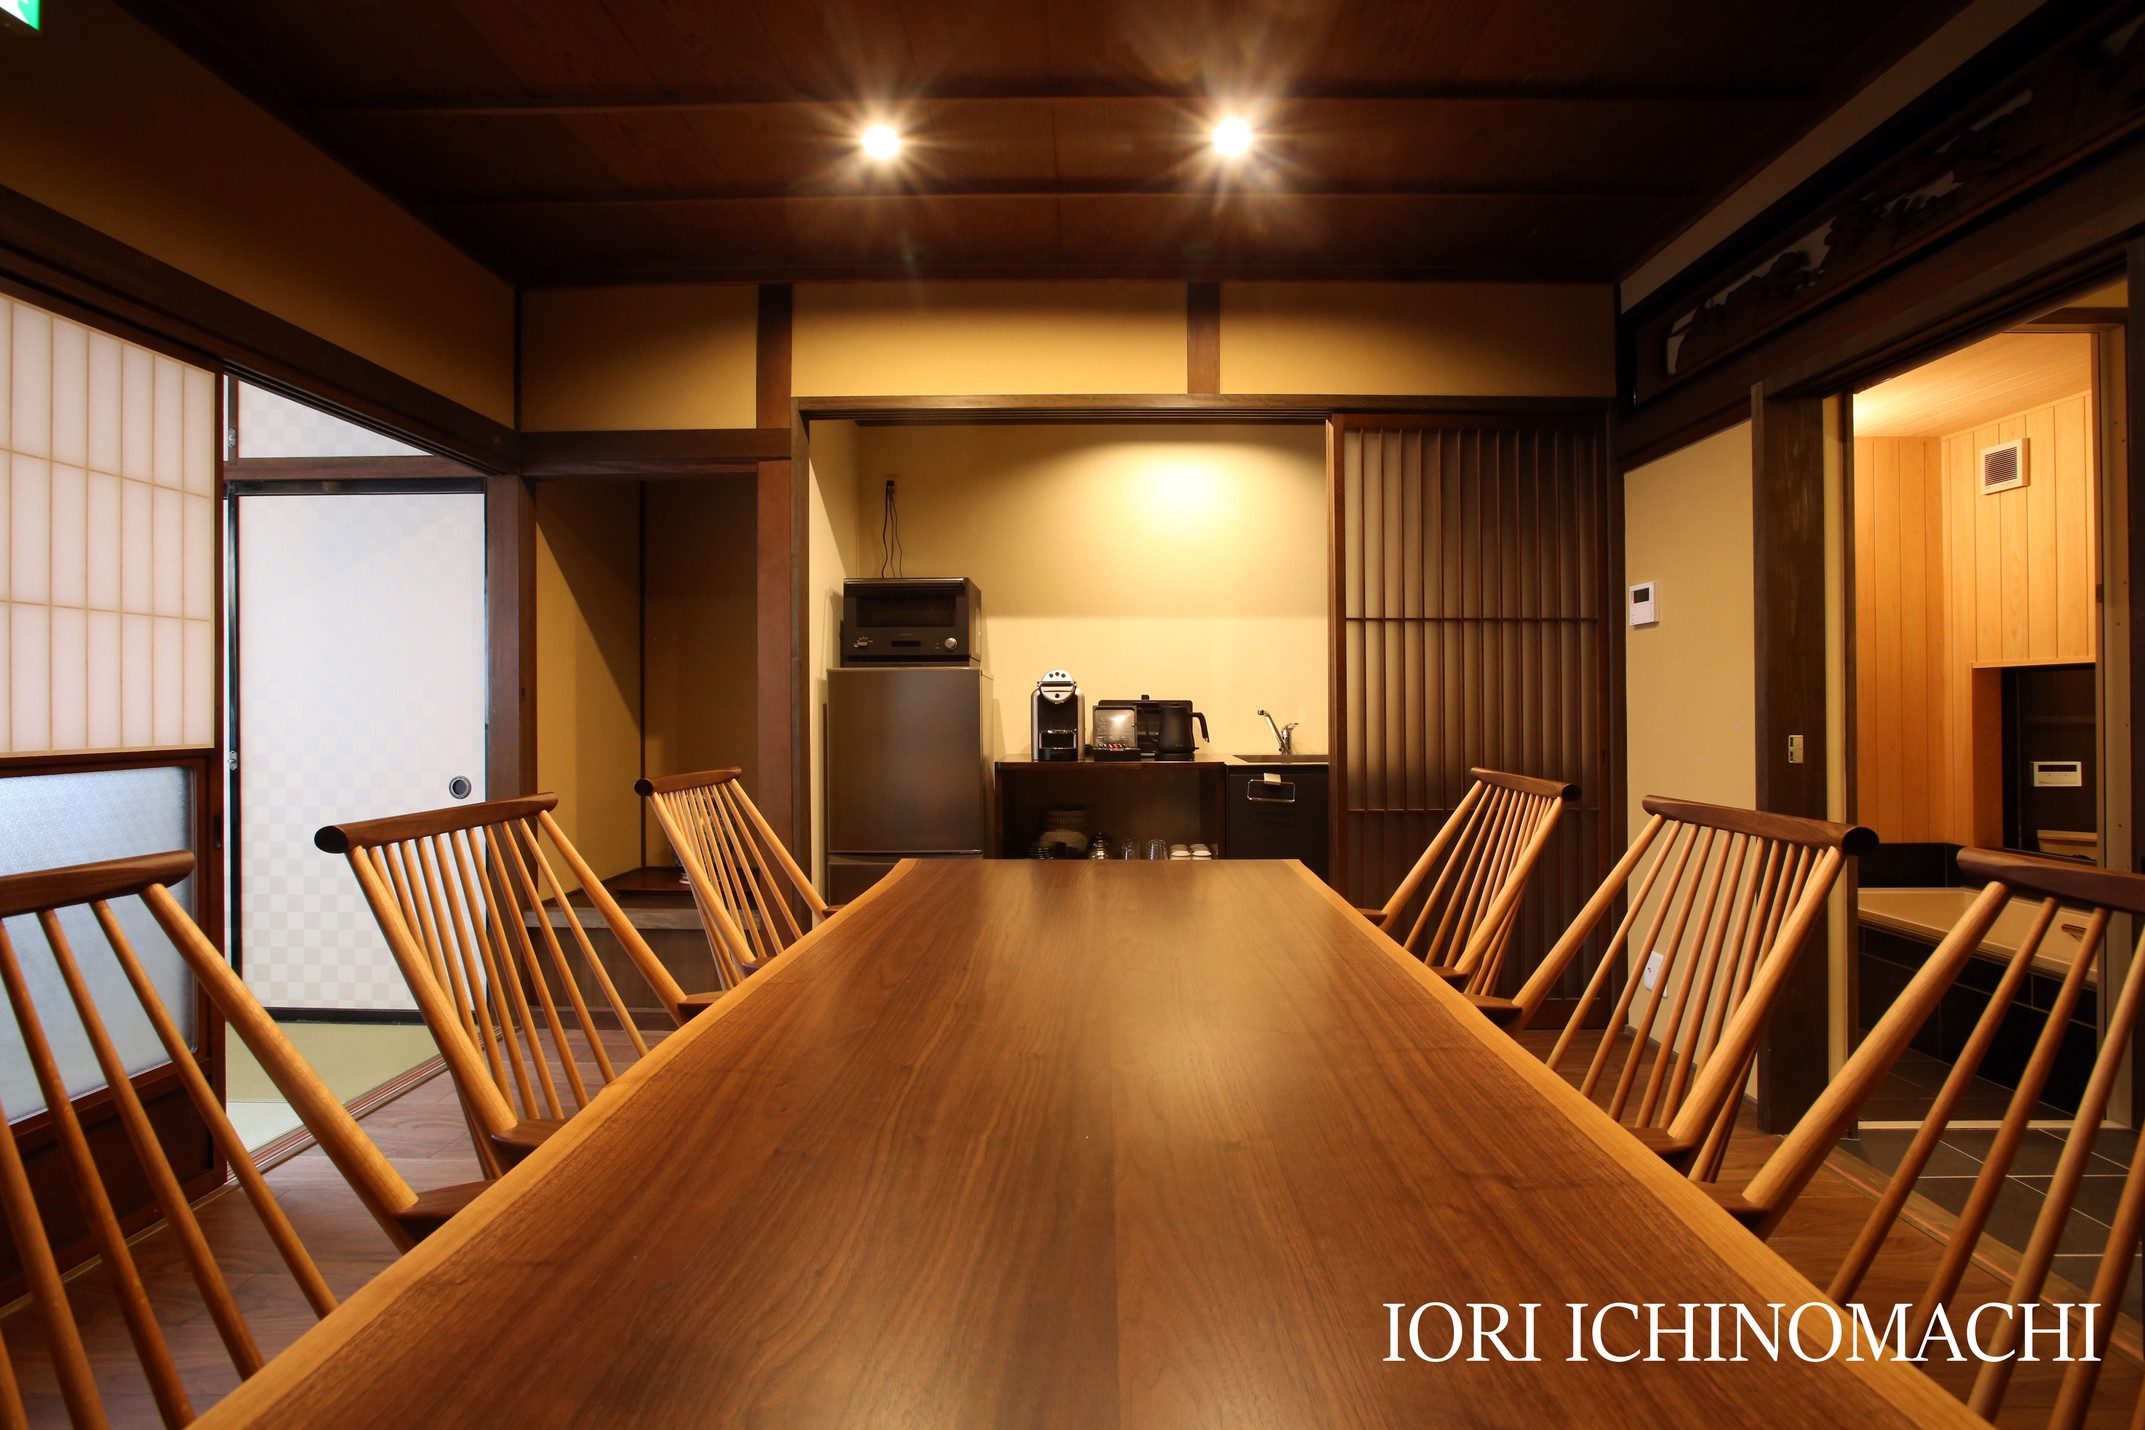 【夕朝食付き・ほおば焼き】IORI ICHINOMACHI モダン町家/伝統美・露天風呂